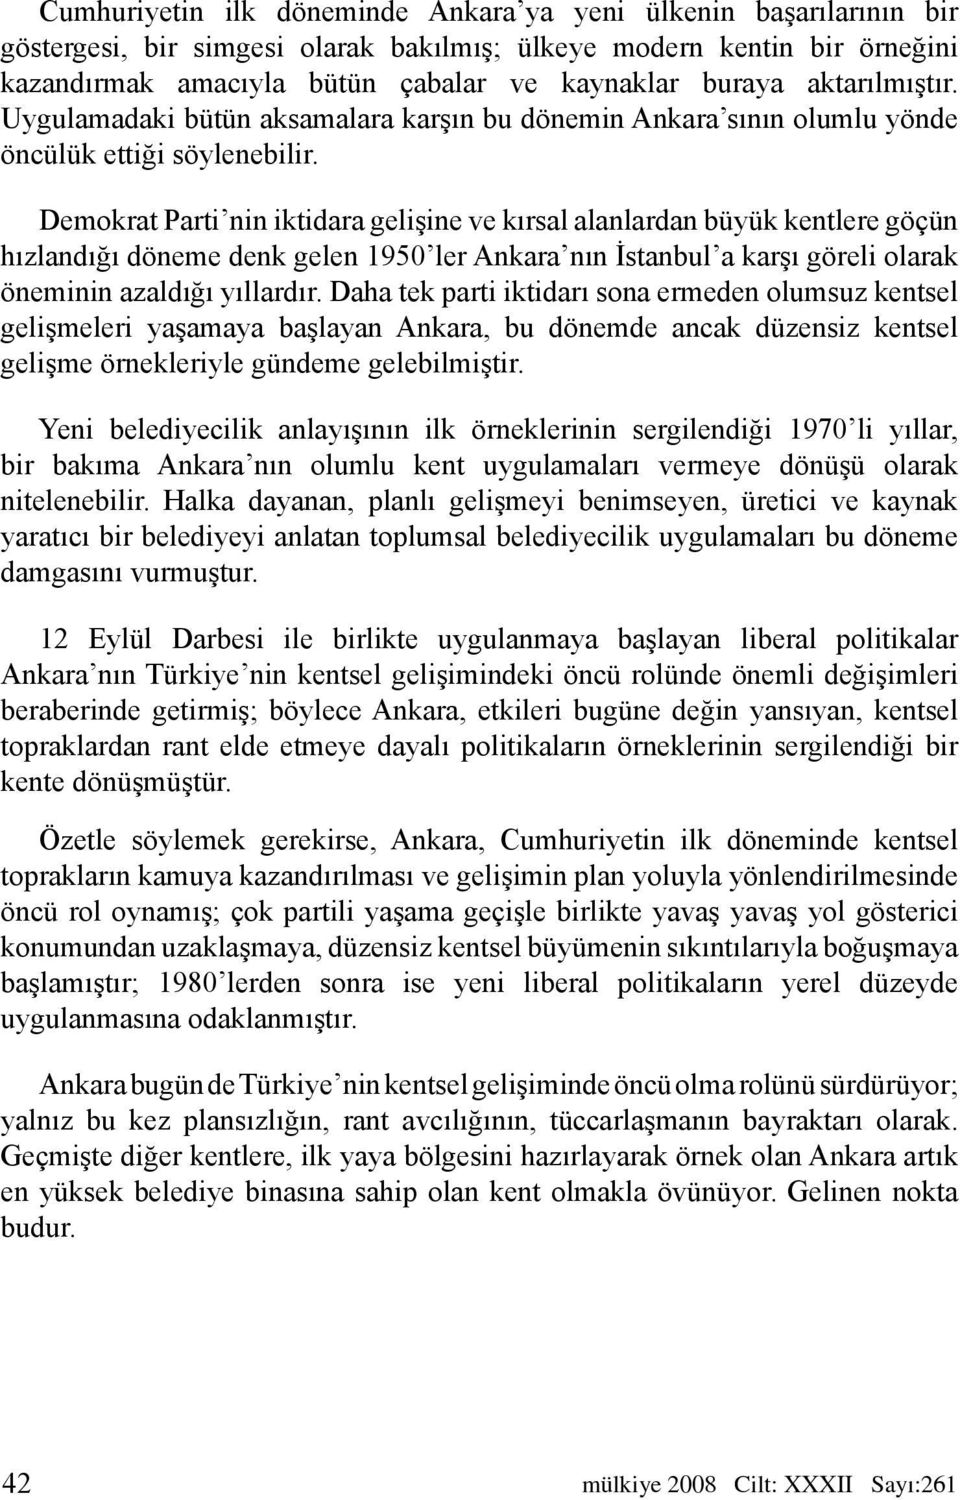 Demokrat Parti nin iktidara gelişine ve kırsal alanlardan büyük kentlere göçün hızlandığı döneme denk gelen 1950 ler Ankara nın İstanbul a karşı göreli olarak öneminin azaldığı yıllardır.